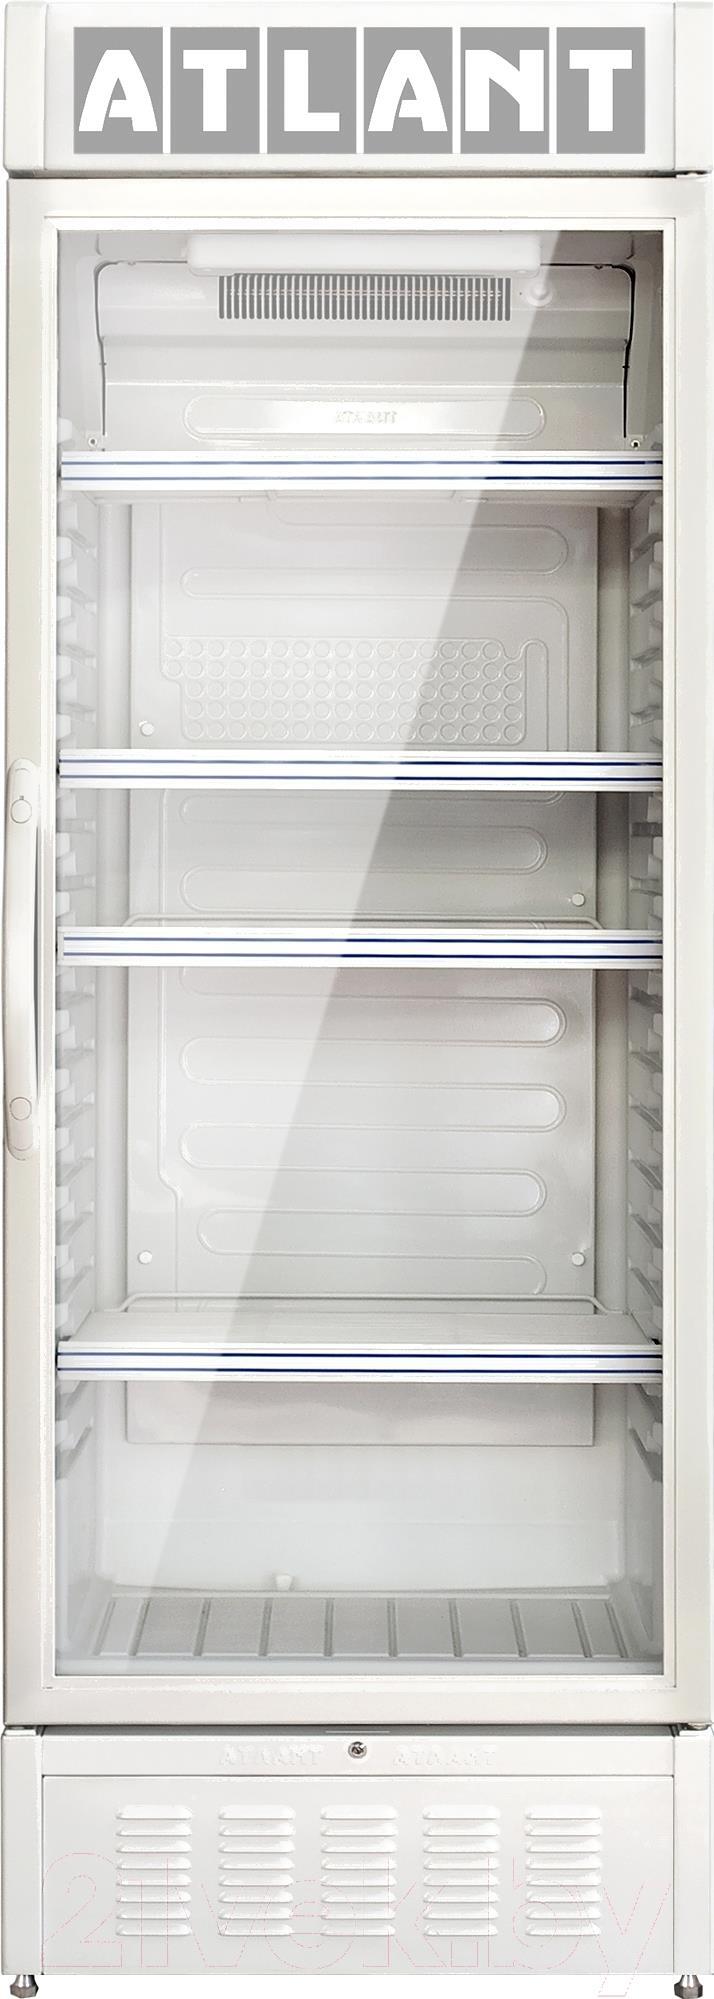 Витрины атлант. Холодильник-витрина Атлант ХТ 1000-000. Шкаф-витрина ATLANT ХТ-1001. Холодильный шкаф Атлант хт1000. Атлант ХТ-1001-000.